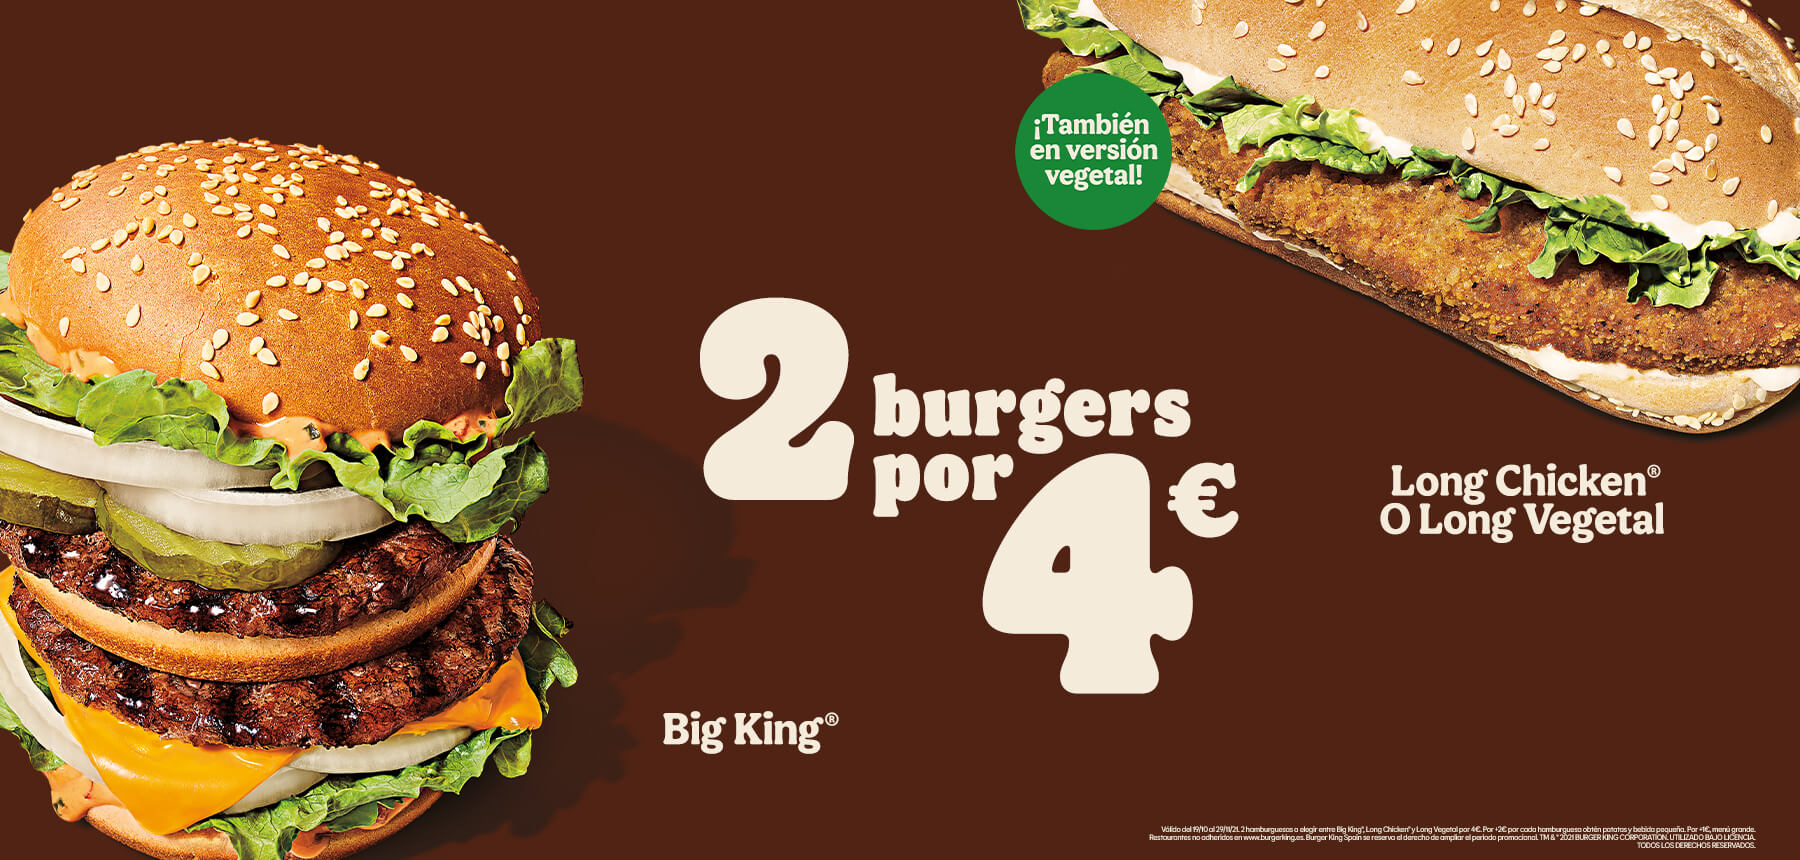 2 hamburguesas a elegir entre Big King, Long Chicken y Long Vegetal por 4€ en Burger King (promoción válida en restaurante y Auto King)